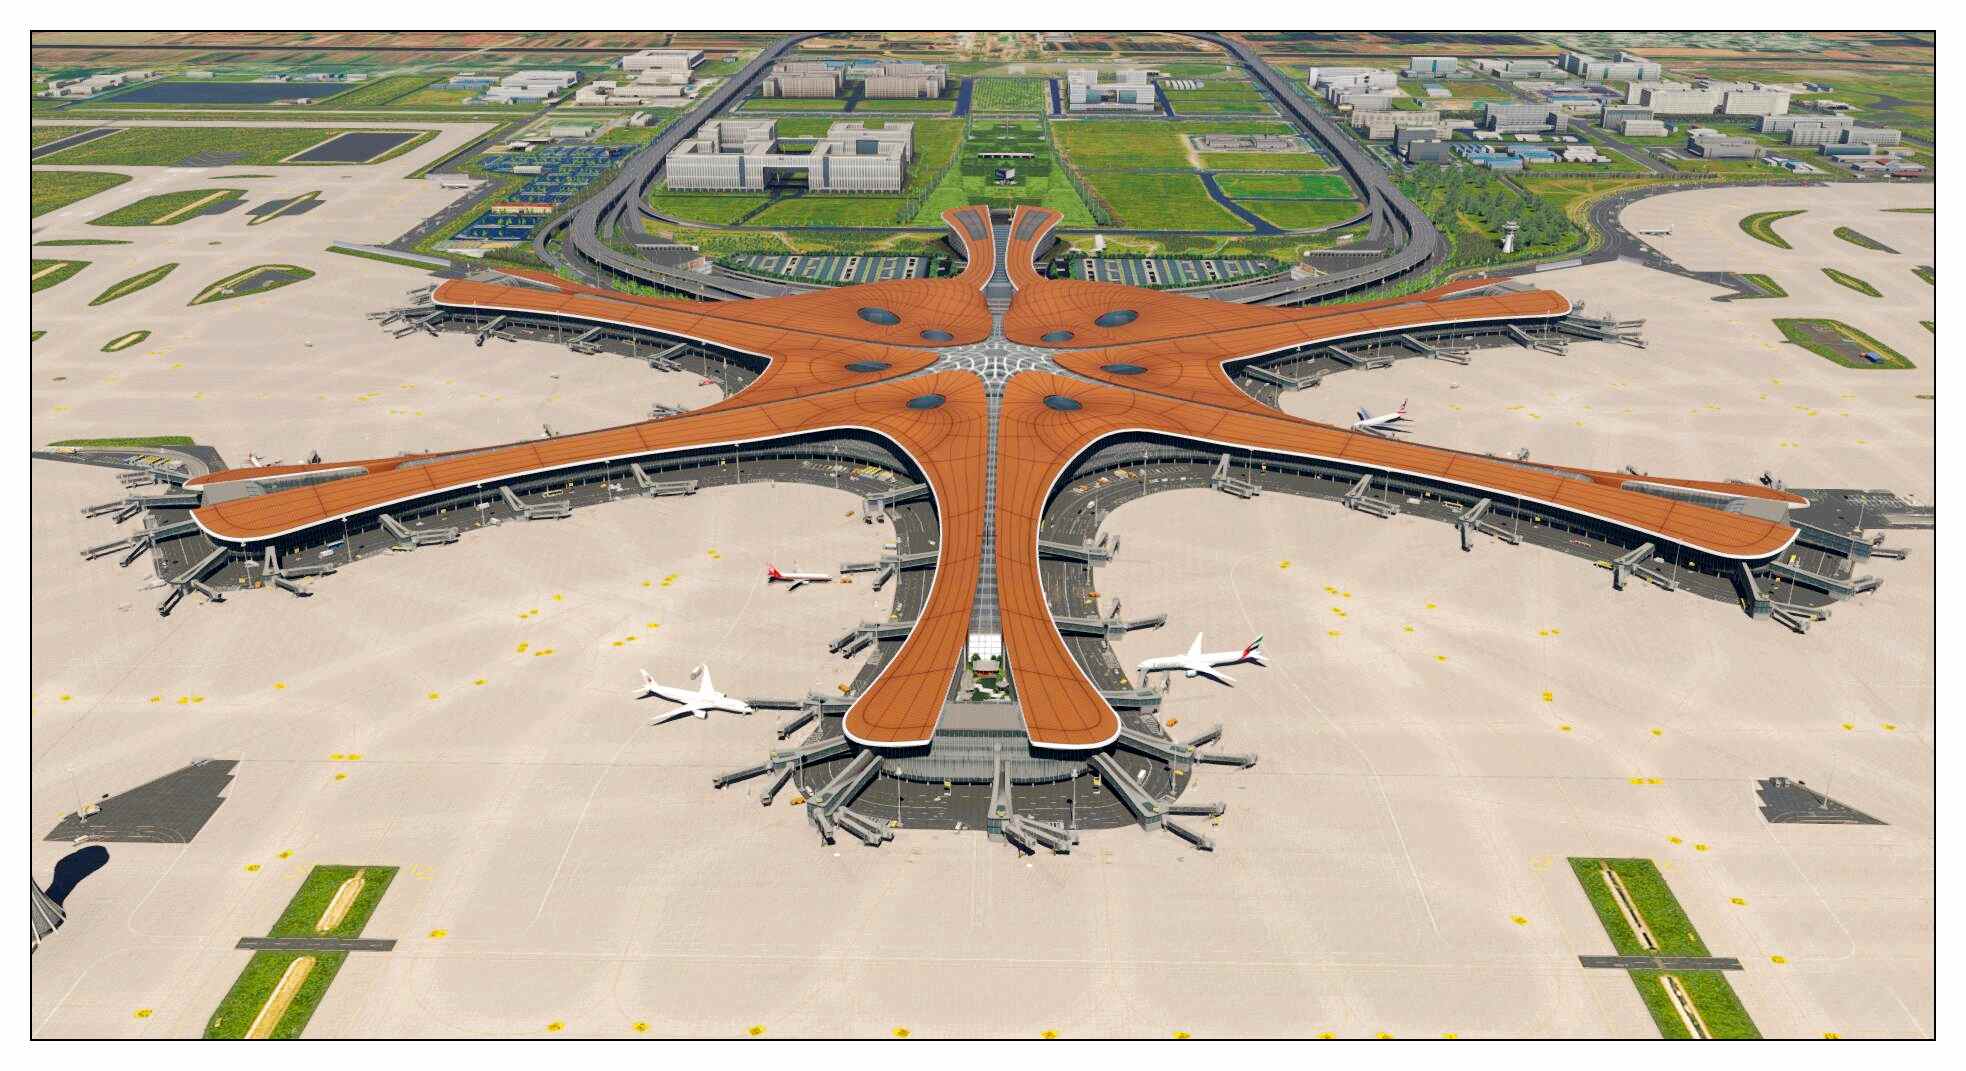 【X-Plane】ZBAD北京大兴国际机场-正式发布-4767 